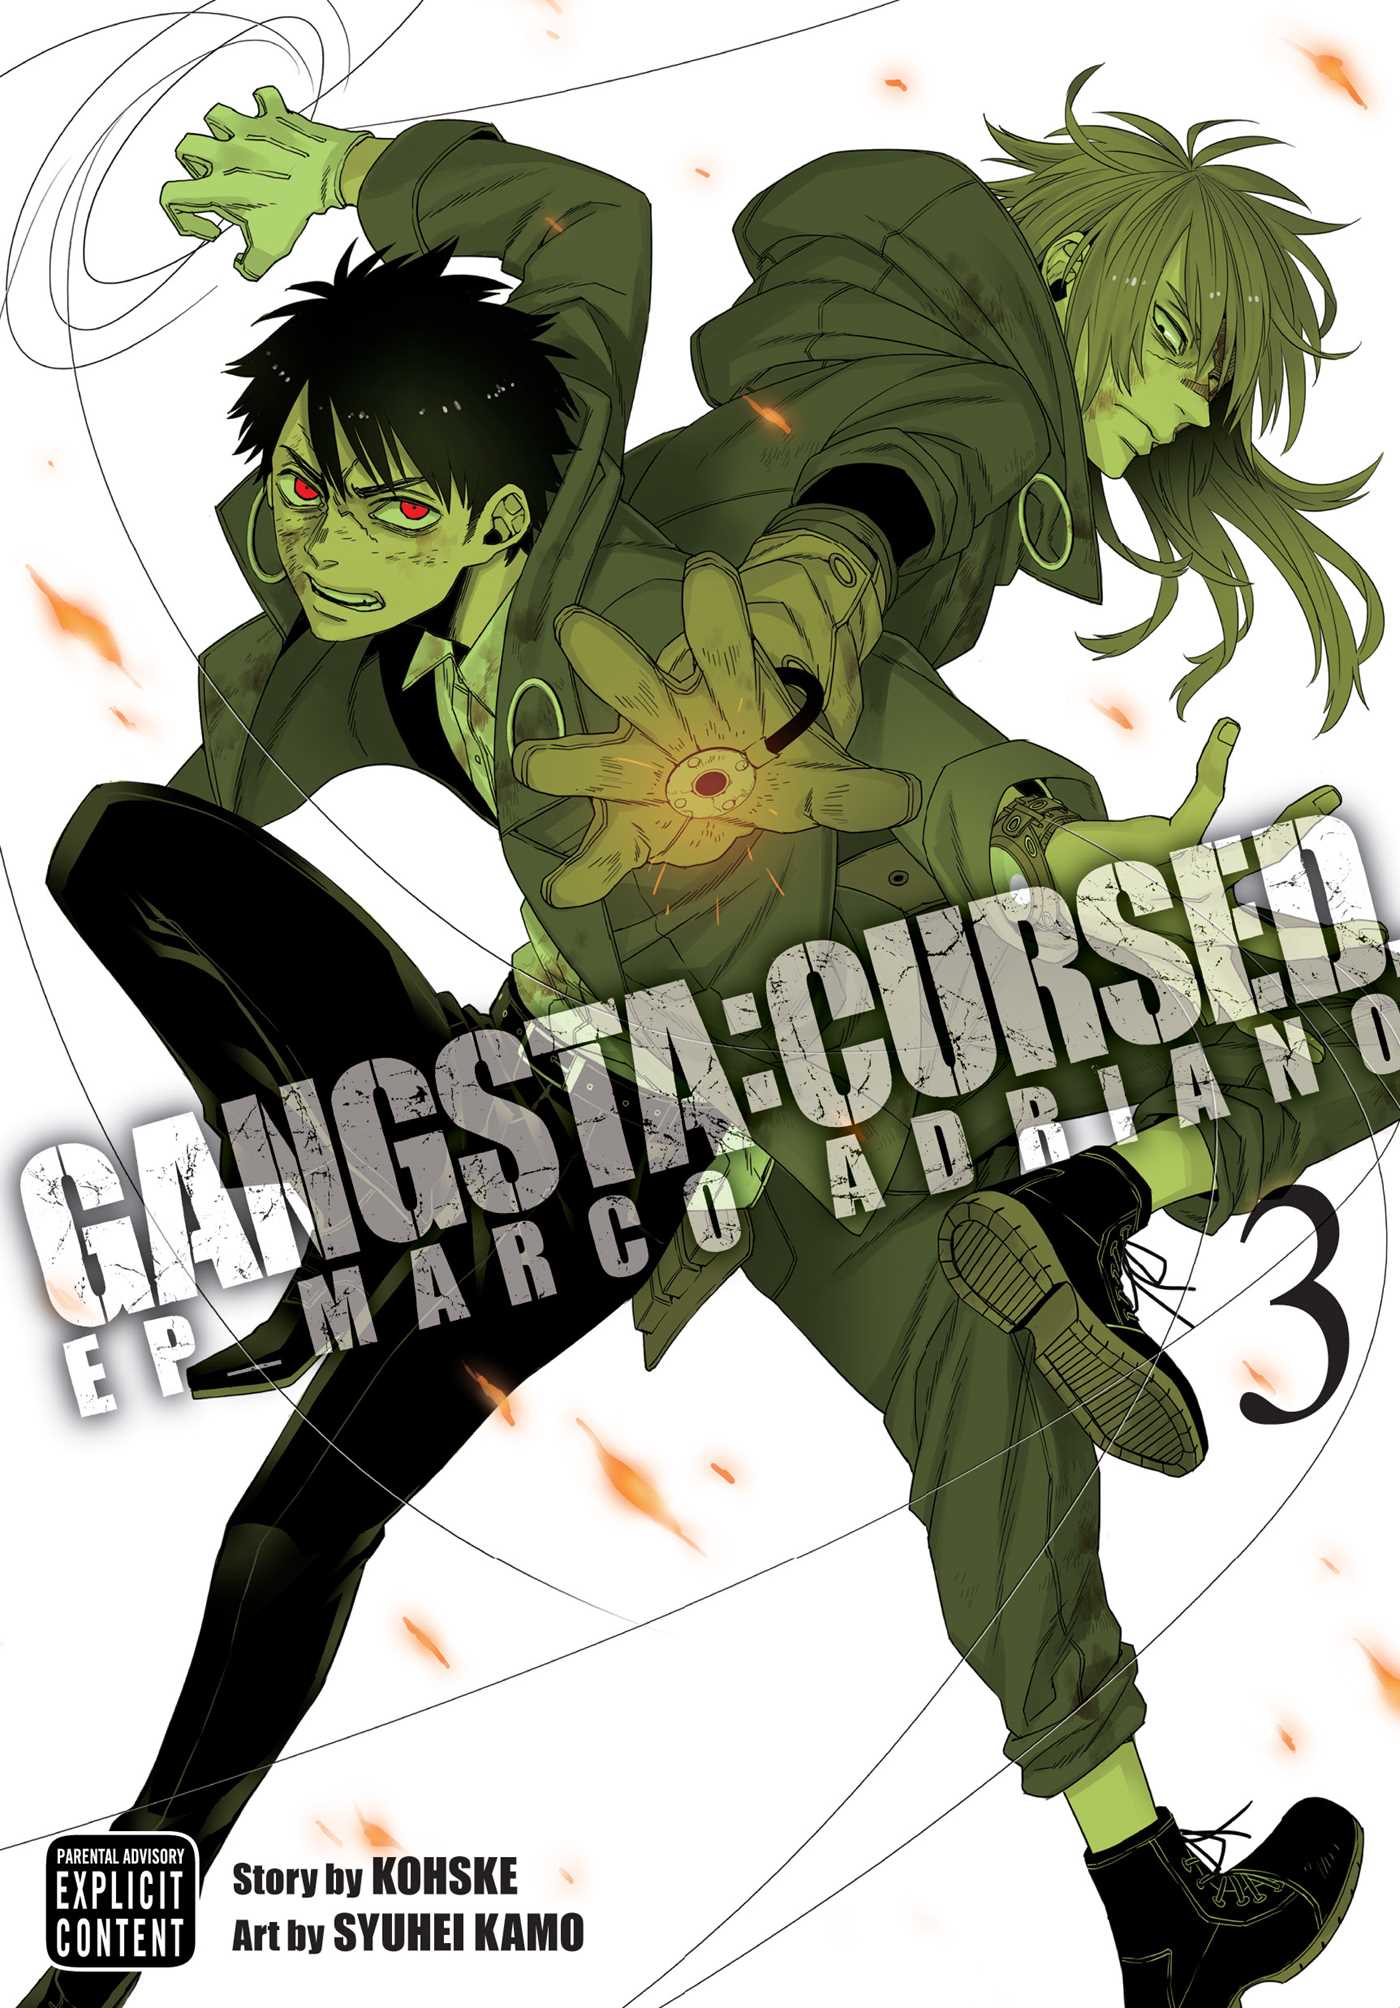 Gangsta: Cursed., Vol. 3